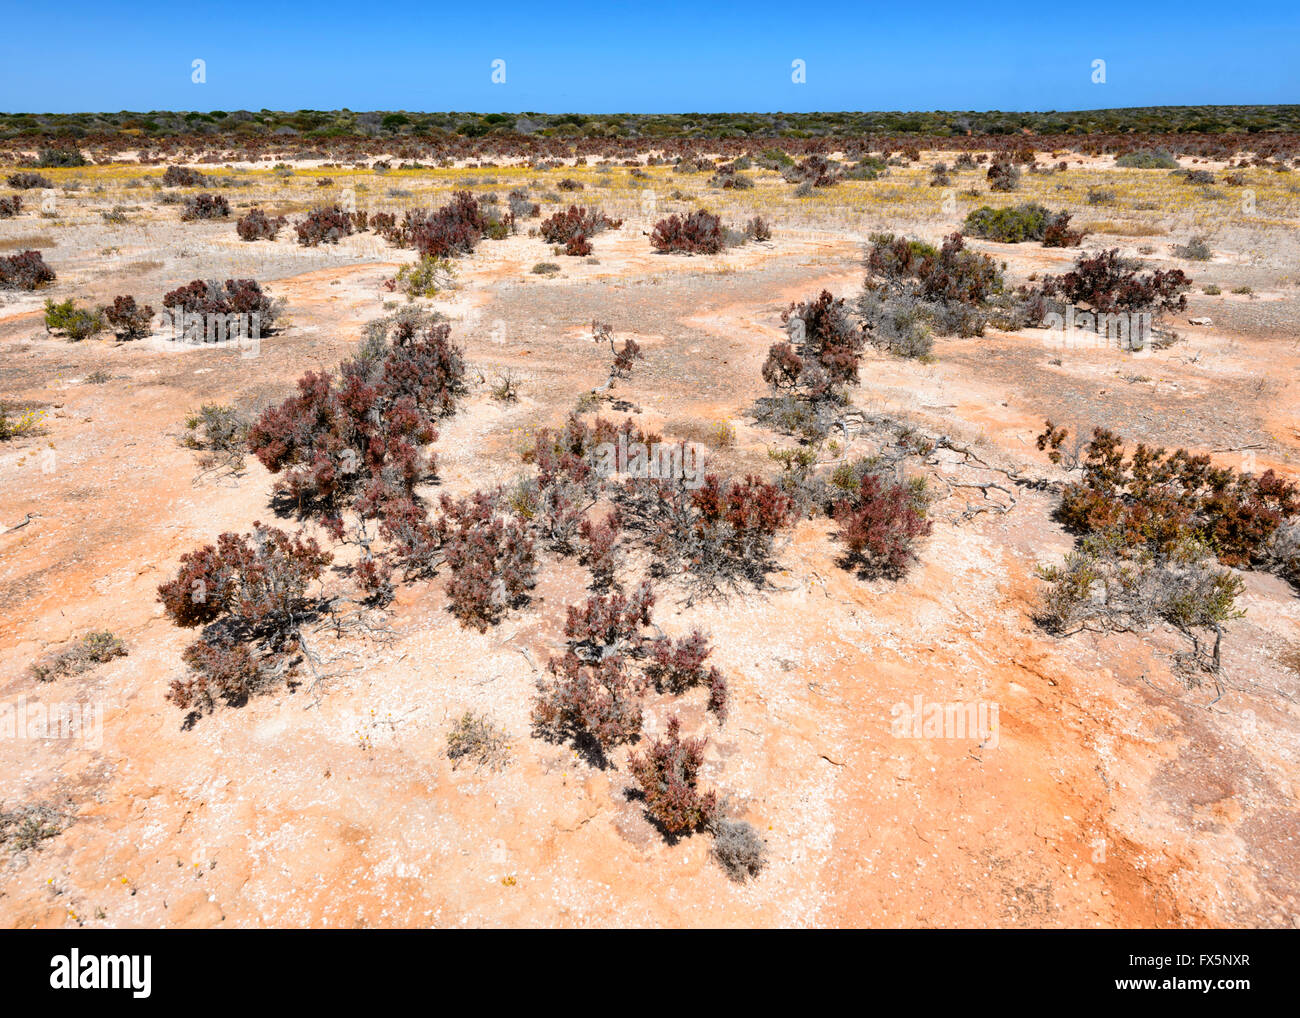 Terres arides arides de la côte nord-ouest de l'Australie Occidentale, WA, Australie Banque D'Images